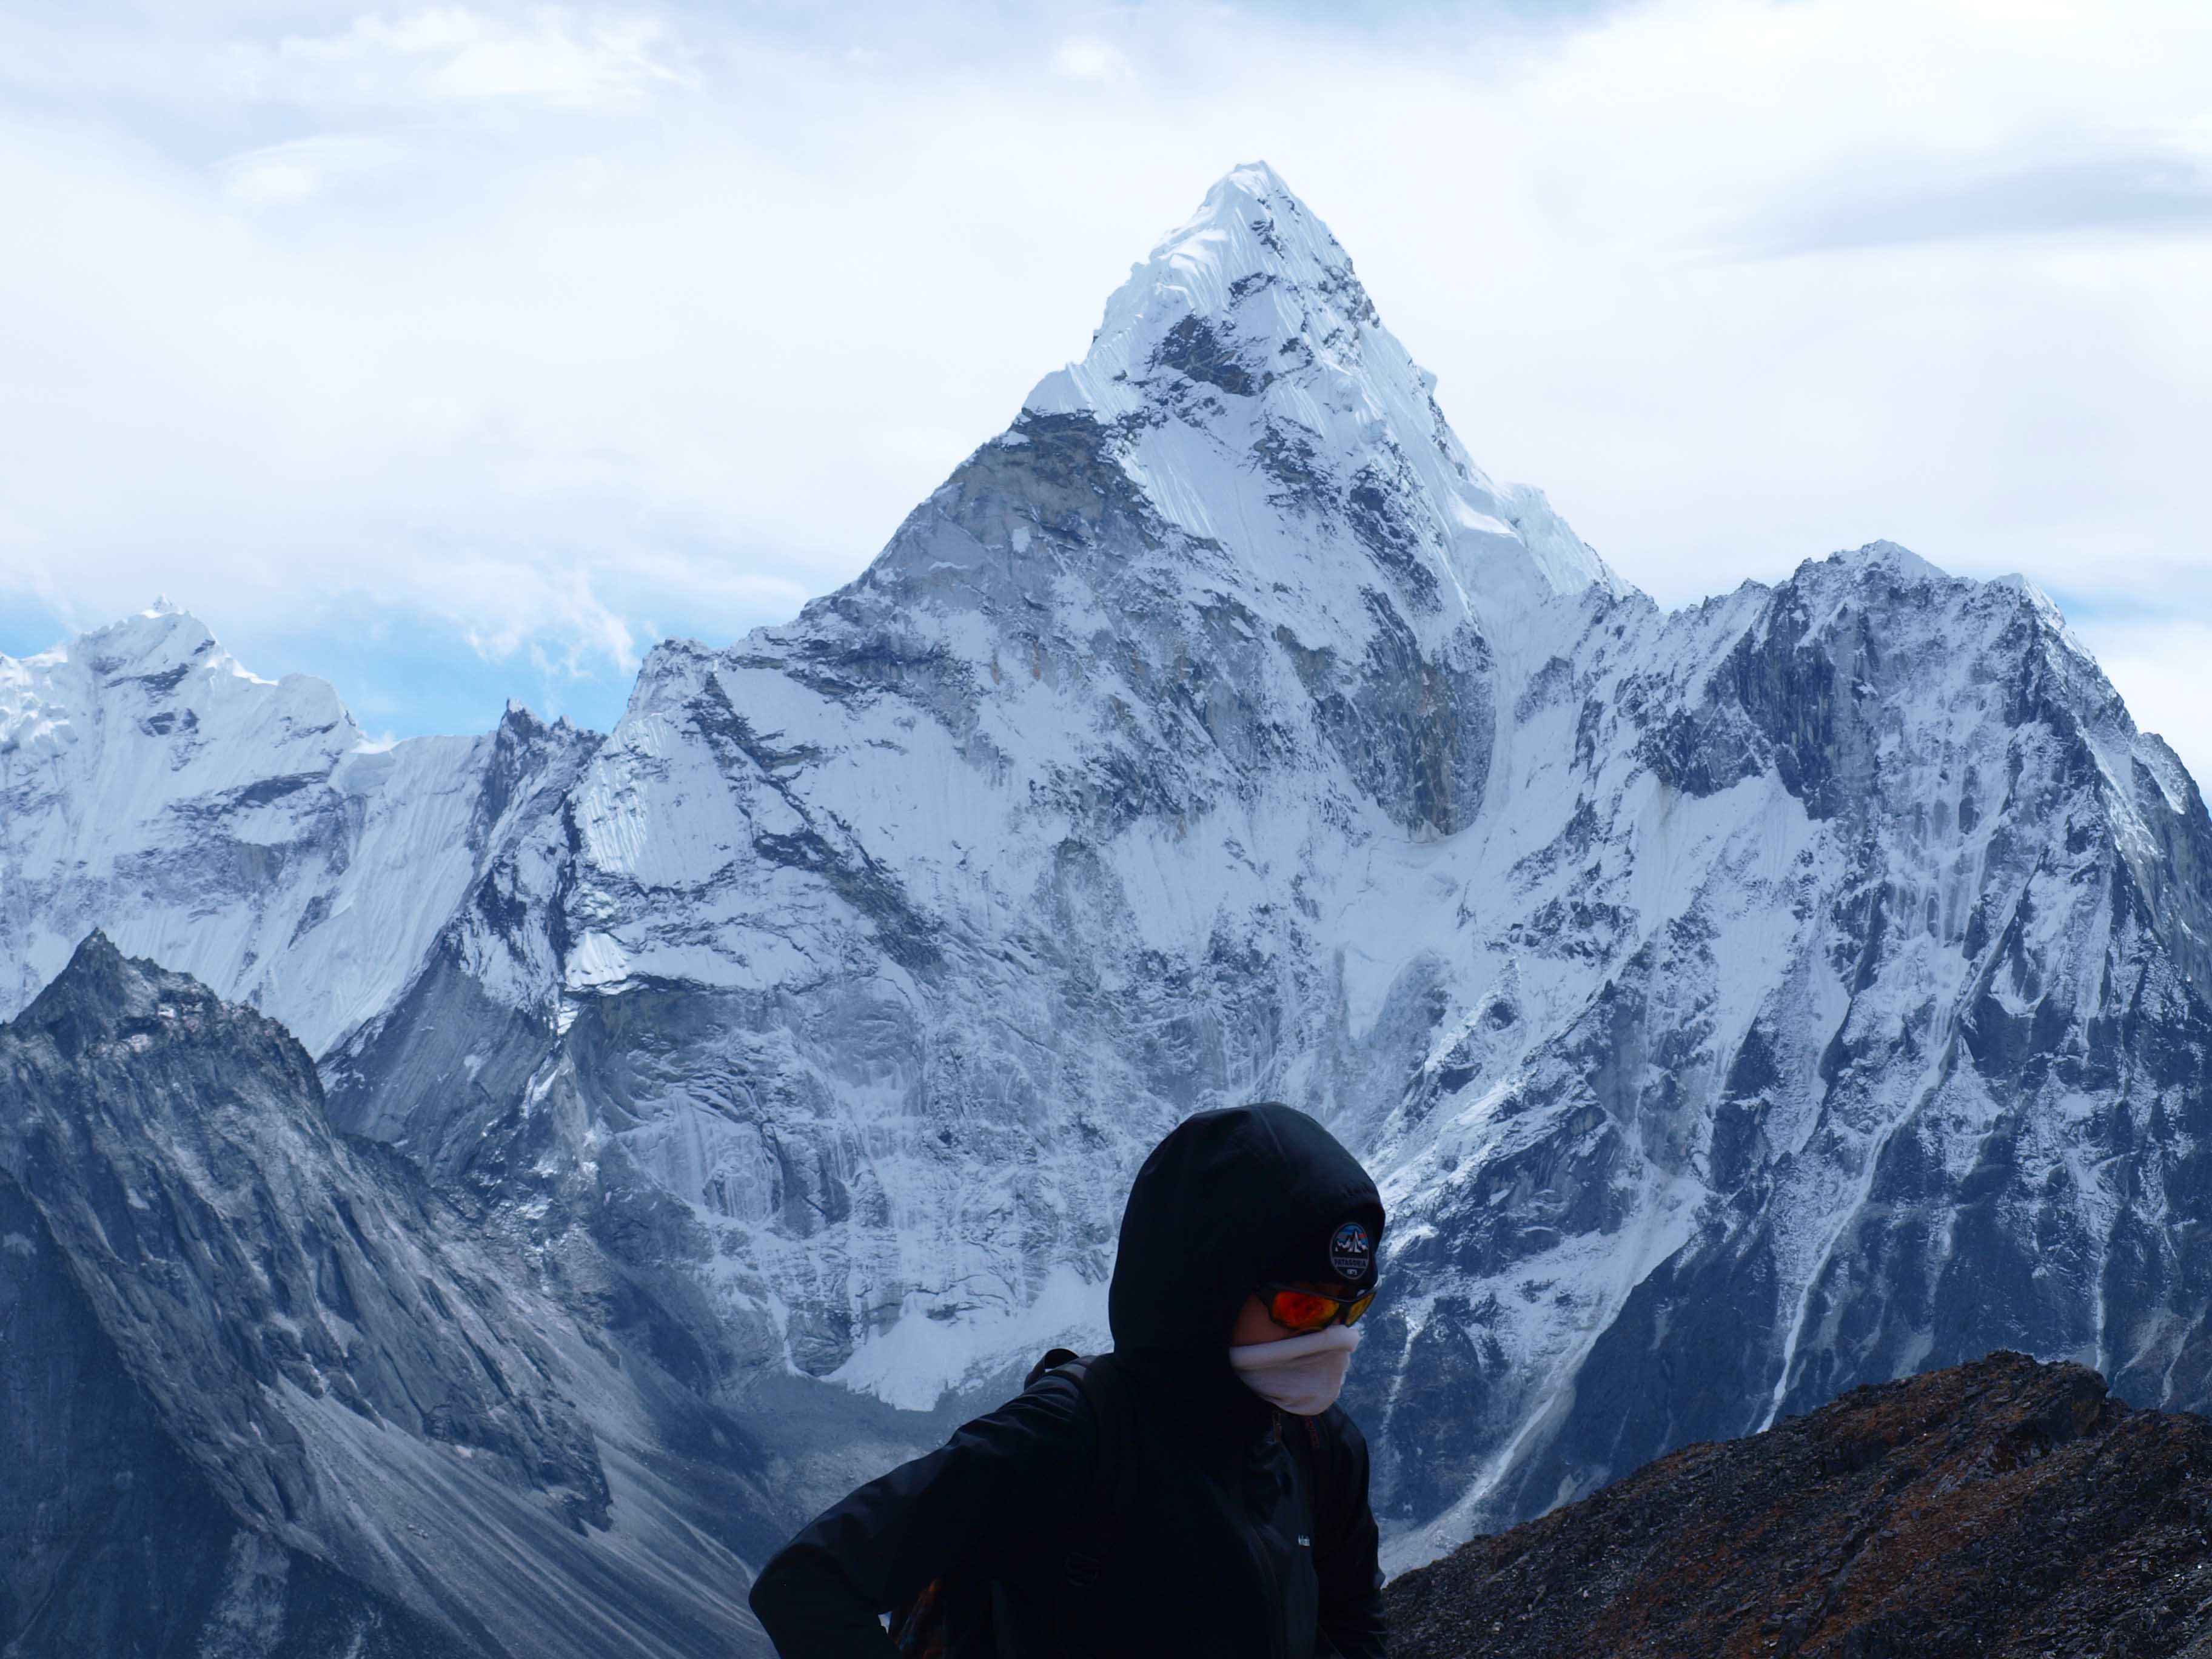 View of Ama Dublum High Himalayas